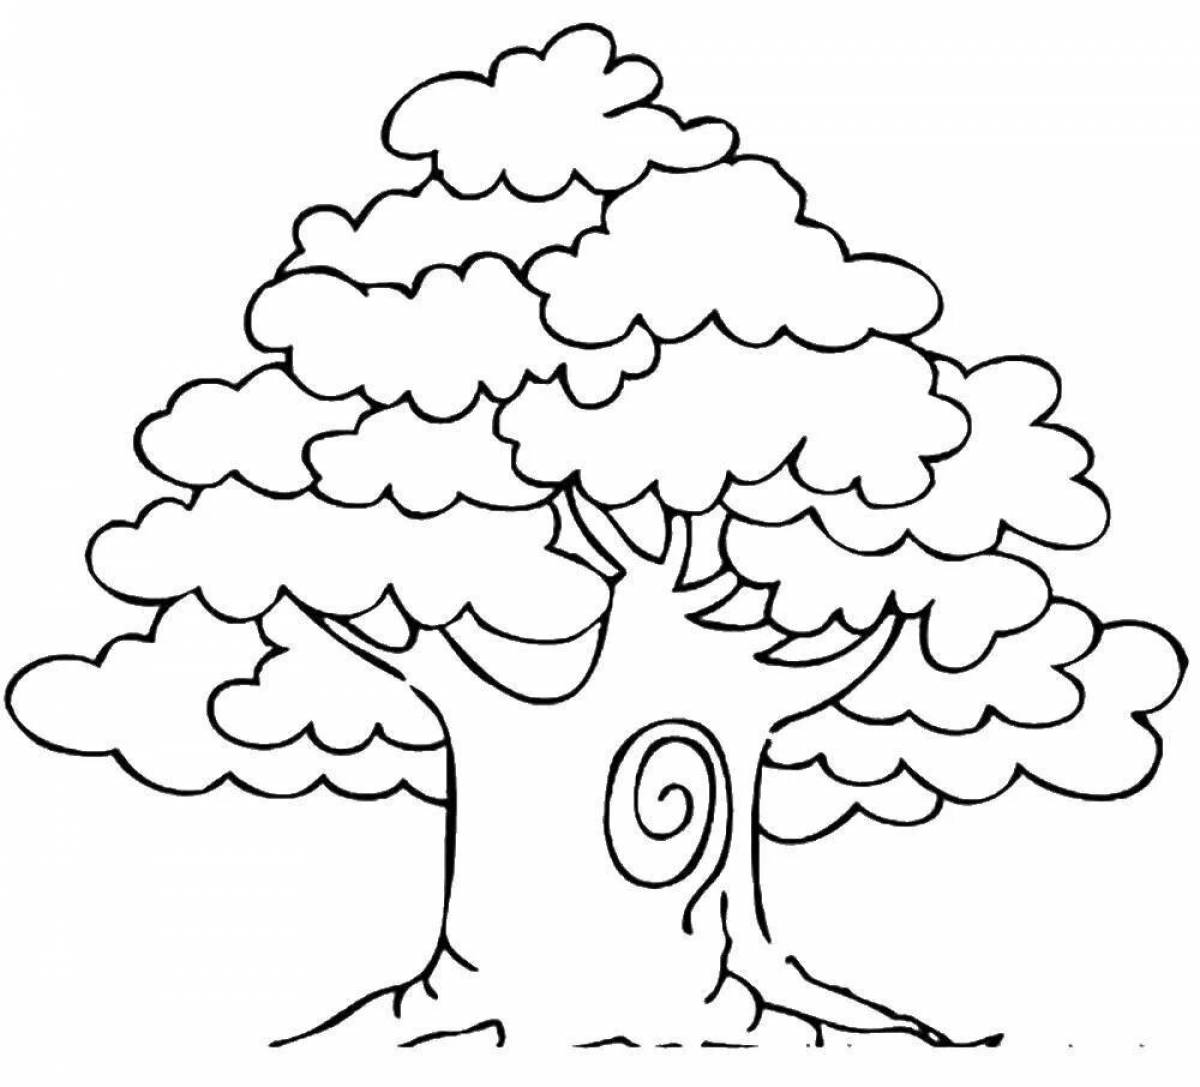 Изысканная раскраска дерева для детей 5-6 лет